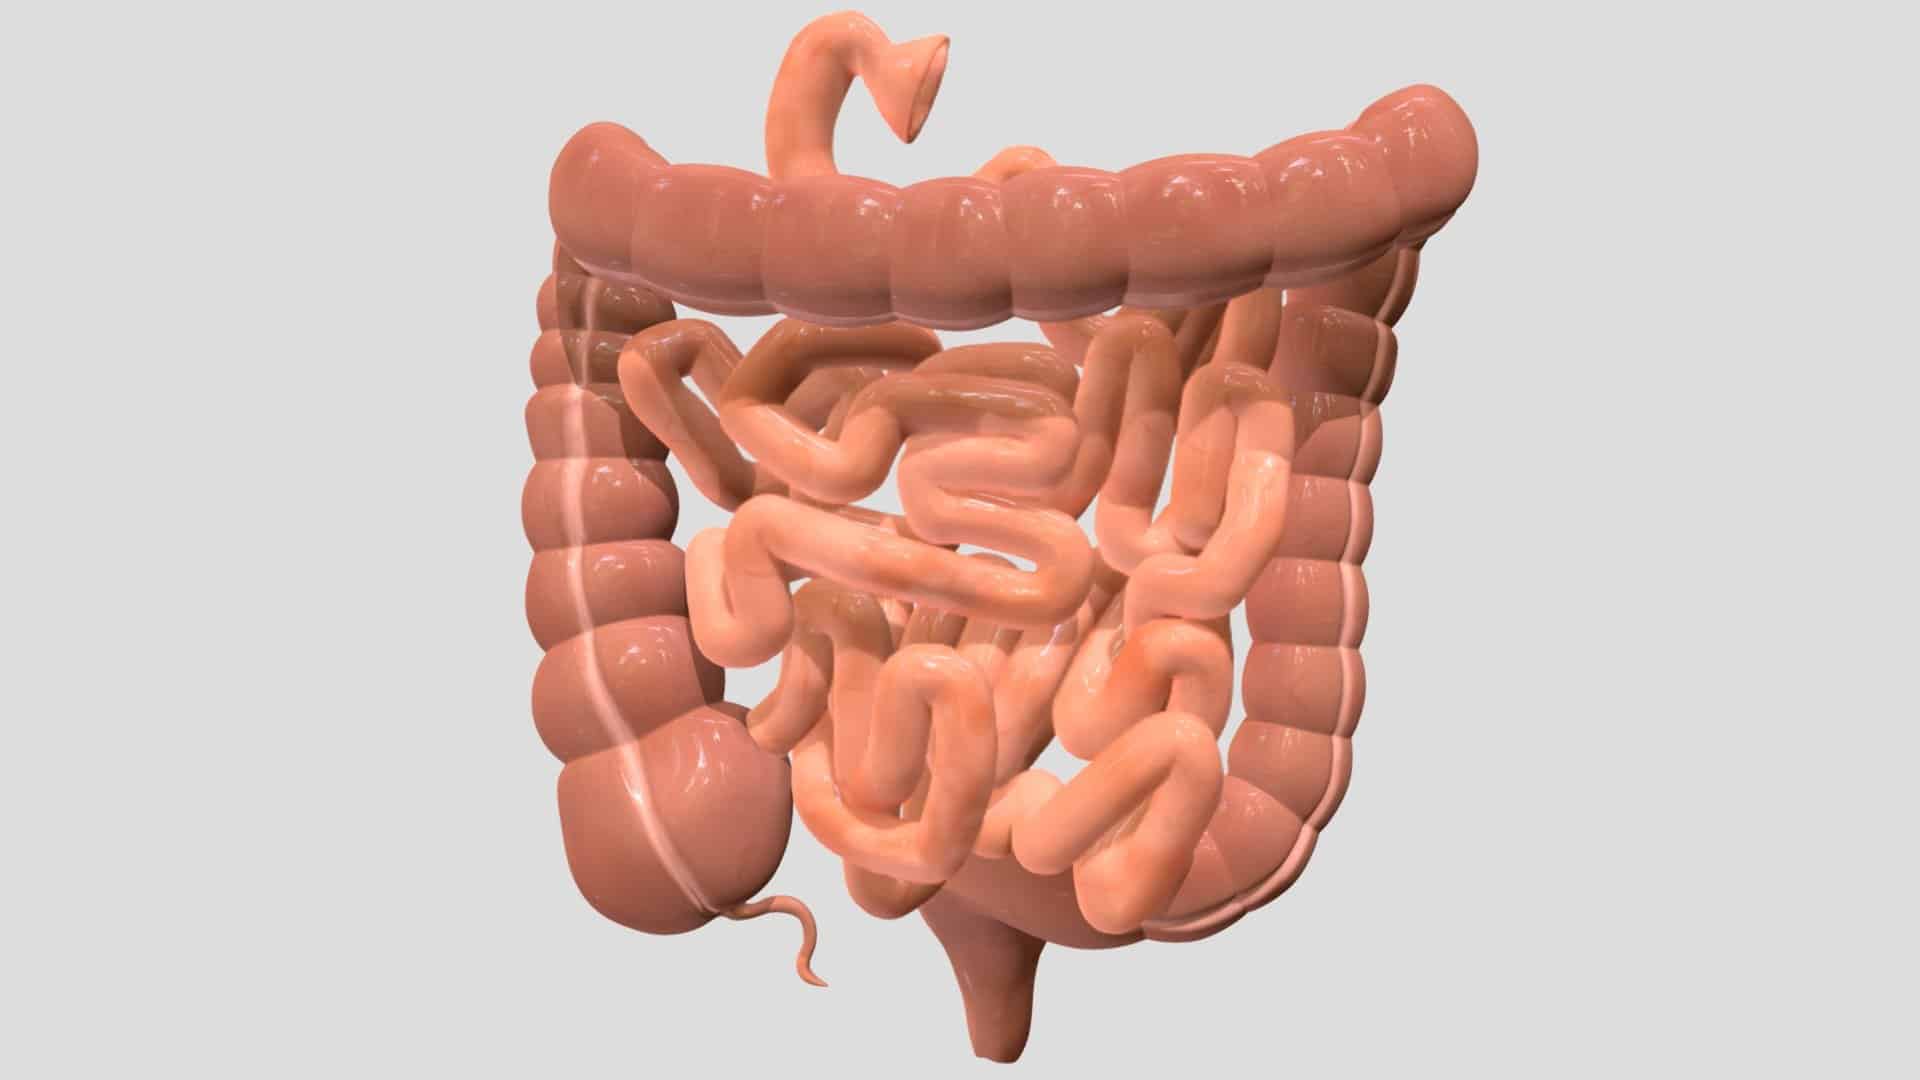 Descubra o tamanho do intestino humano e sua relação com o peso